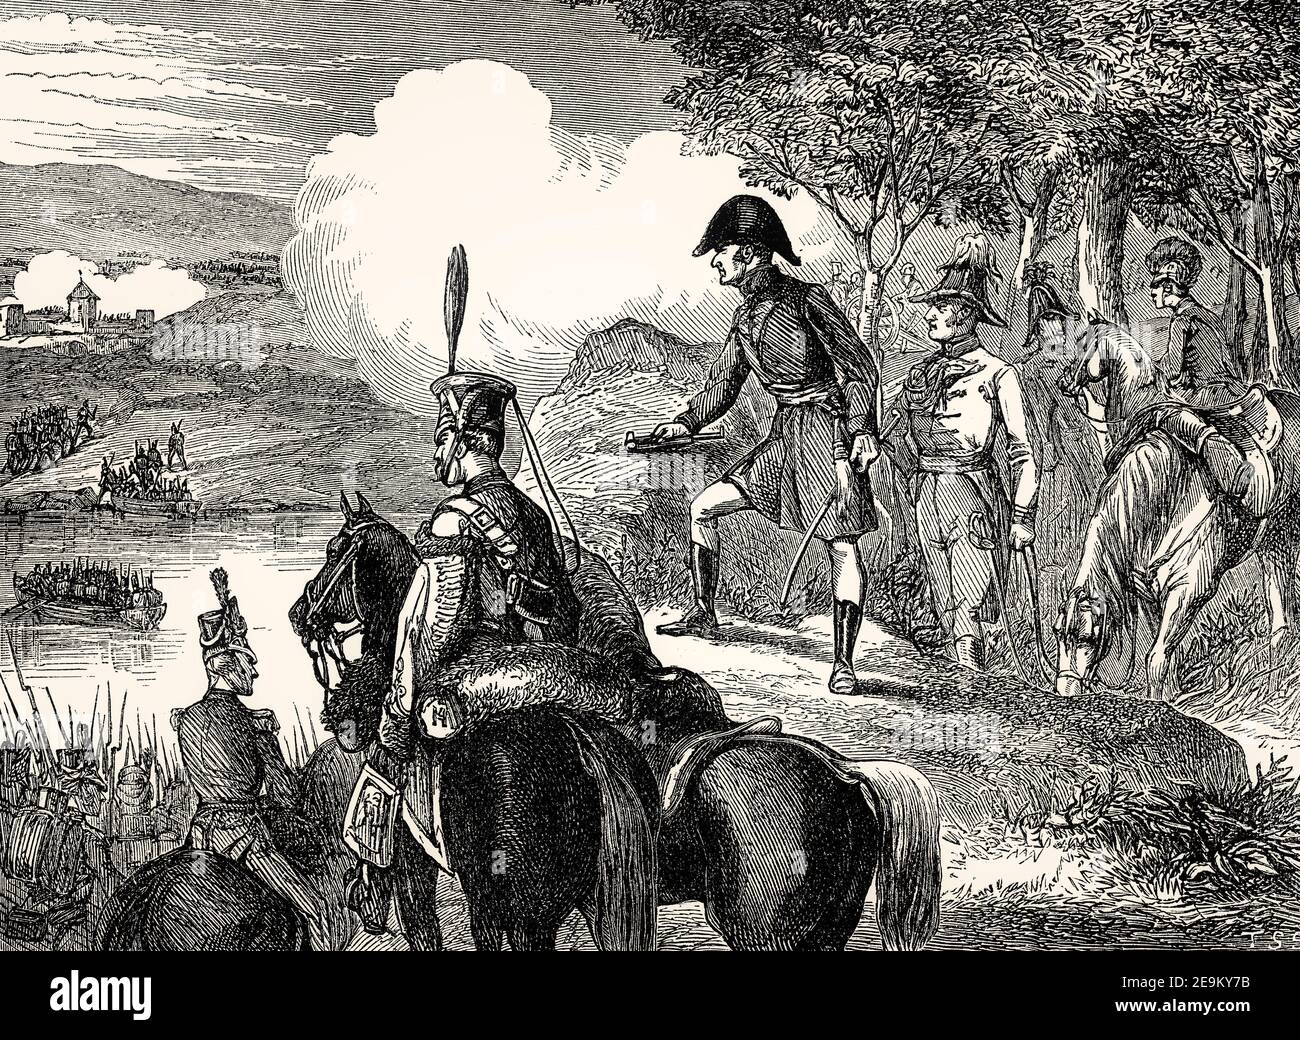 Wellesley attraversa il fiume Douro, seconda battaglia di Oporto, 12 maggio 1809, dalle battaglie britanniche sulla terra e sul mare di James Grant Foto Stock